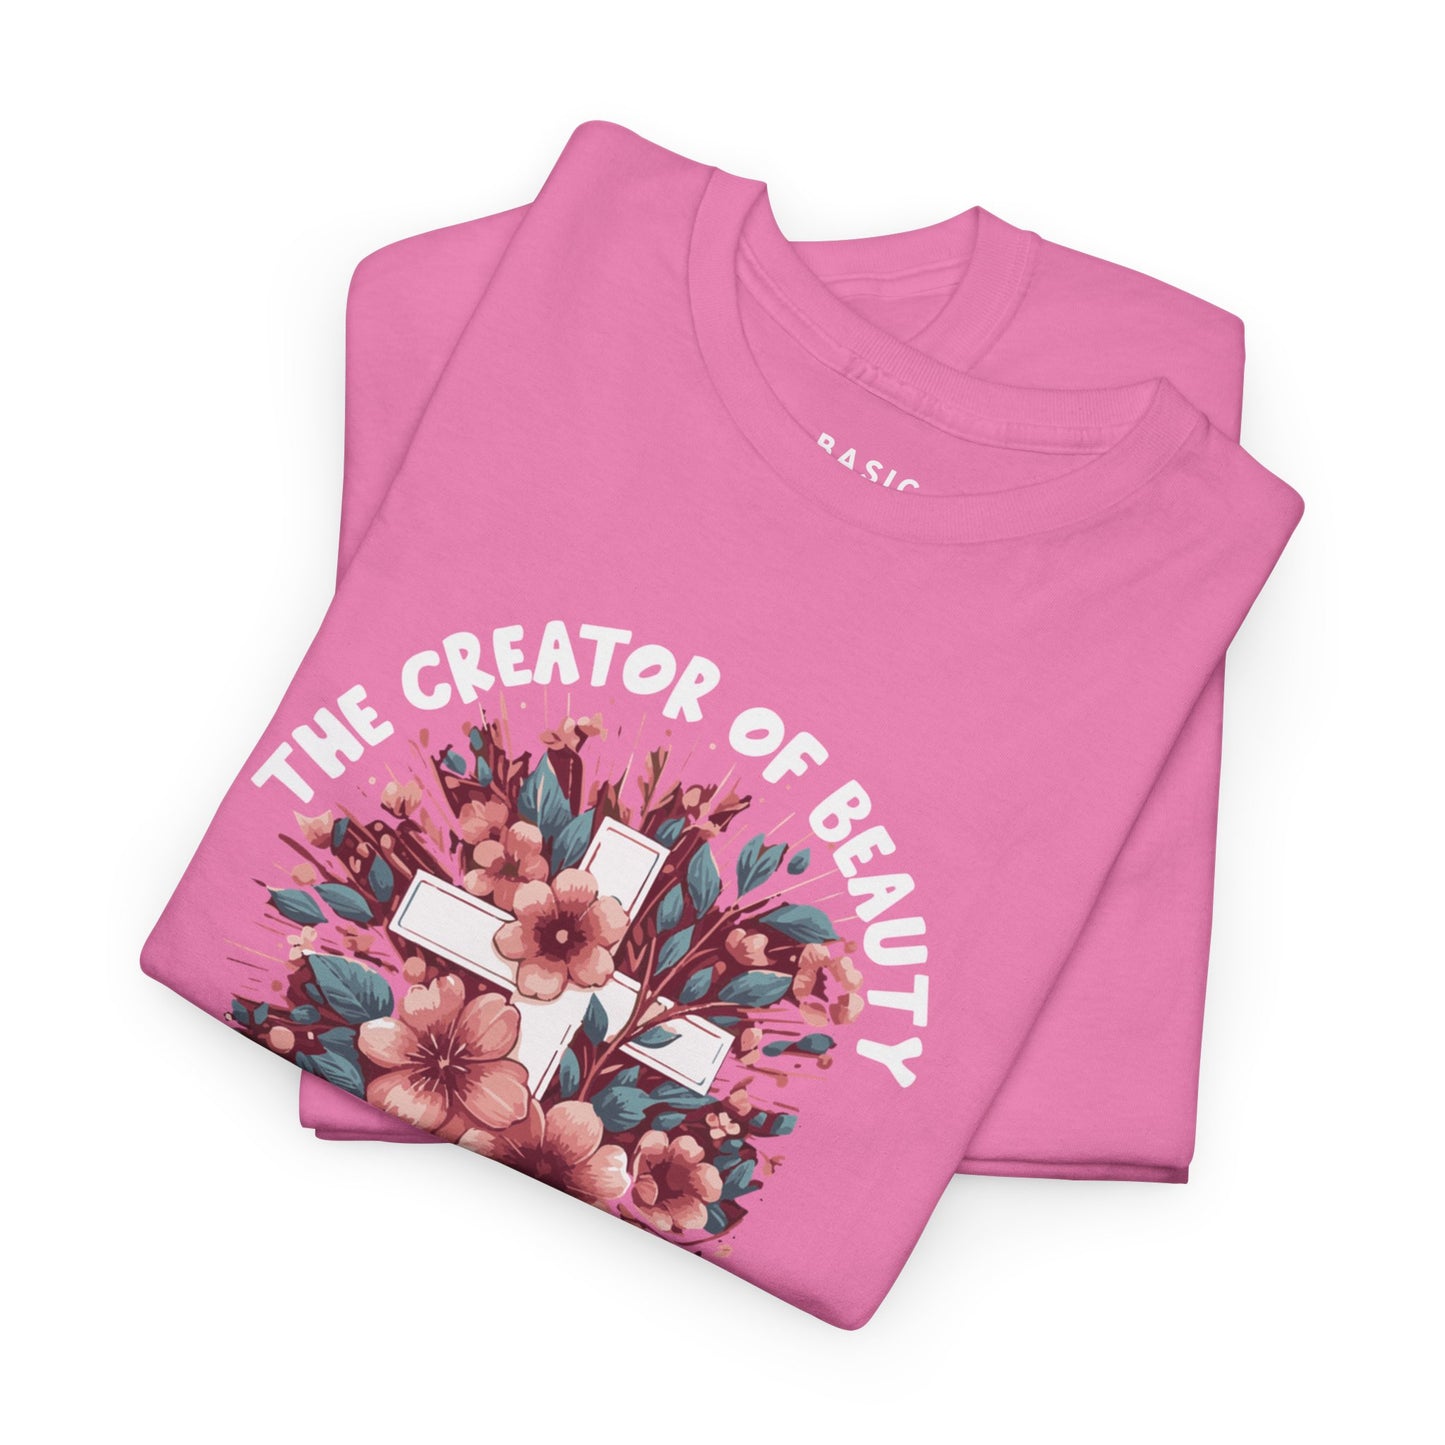 Women's B.A.S.I.C "Creator of Beauty" T Shirt